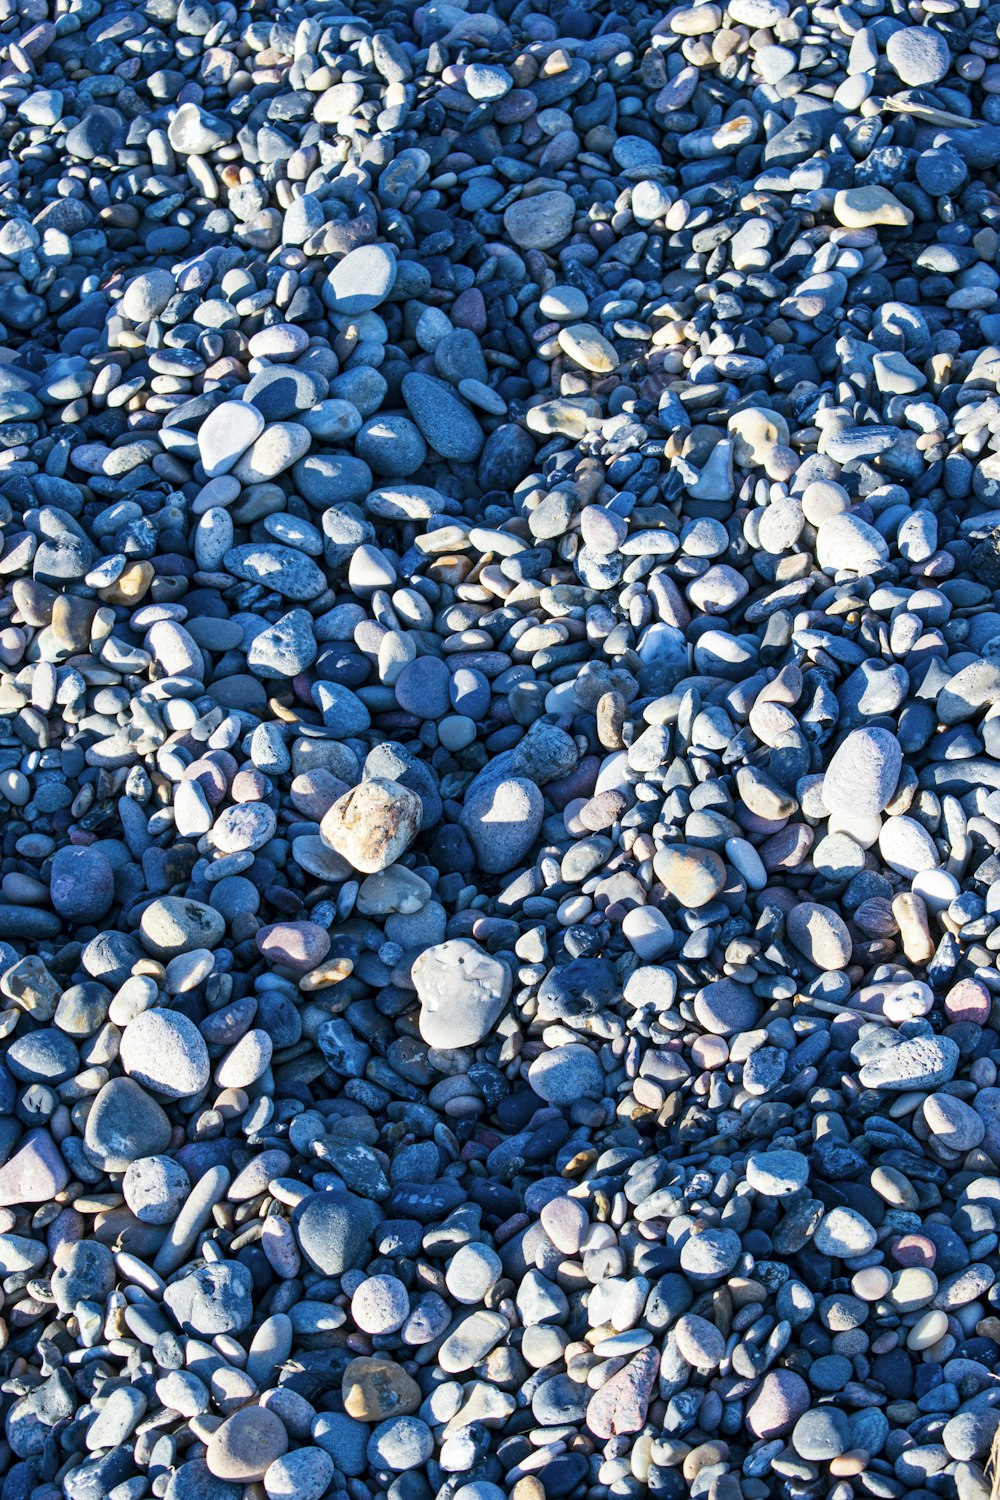 pietre bianche e grigie su ciottoli blu e bianchi